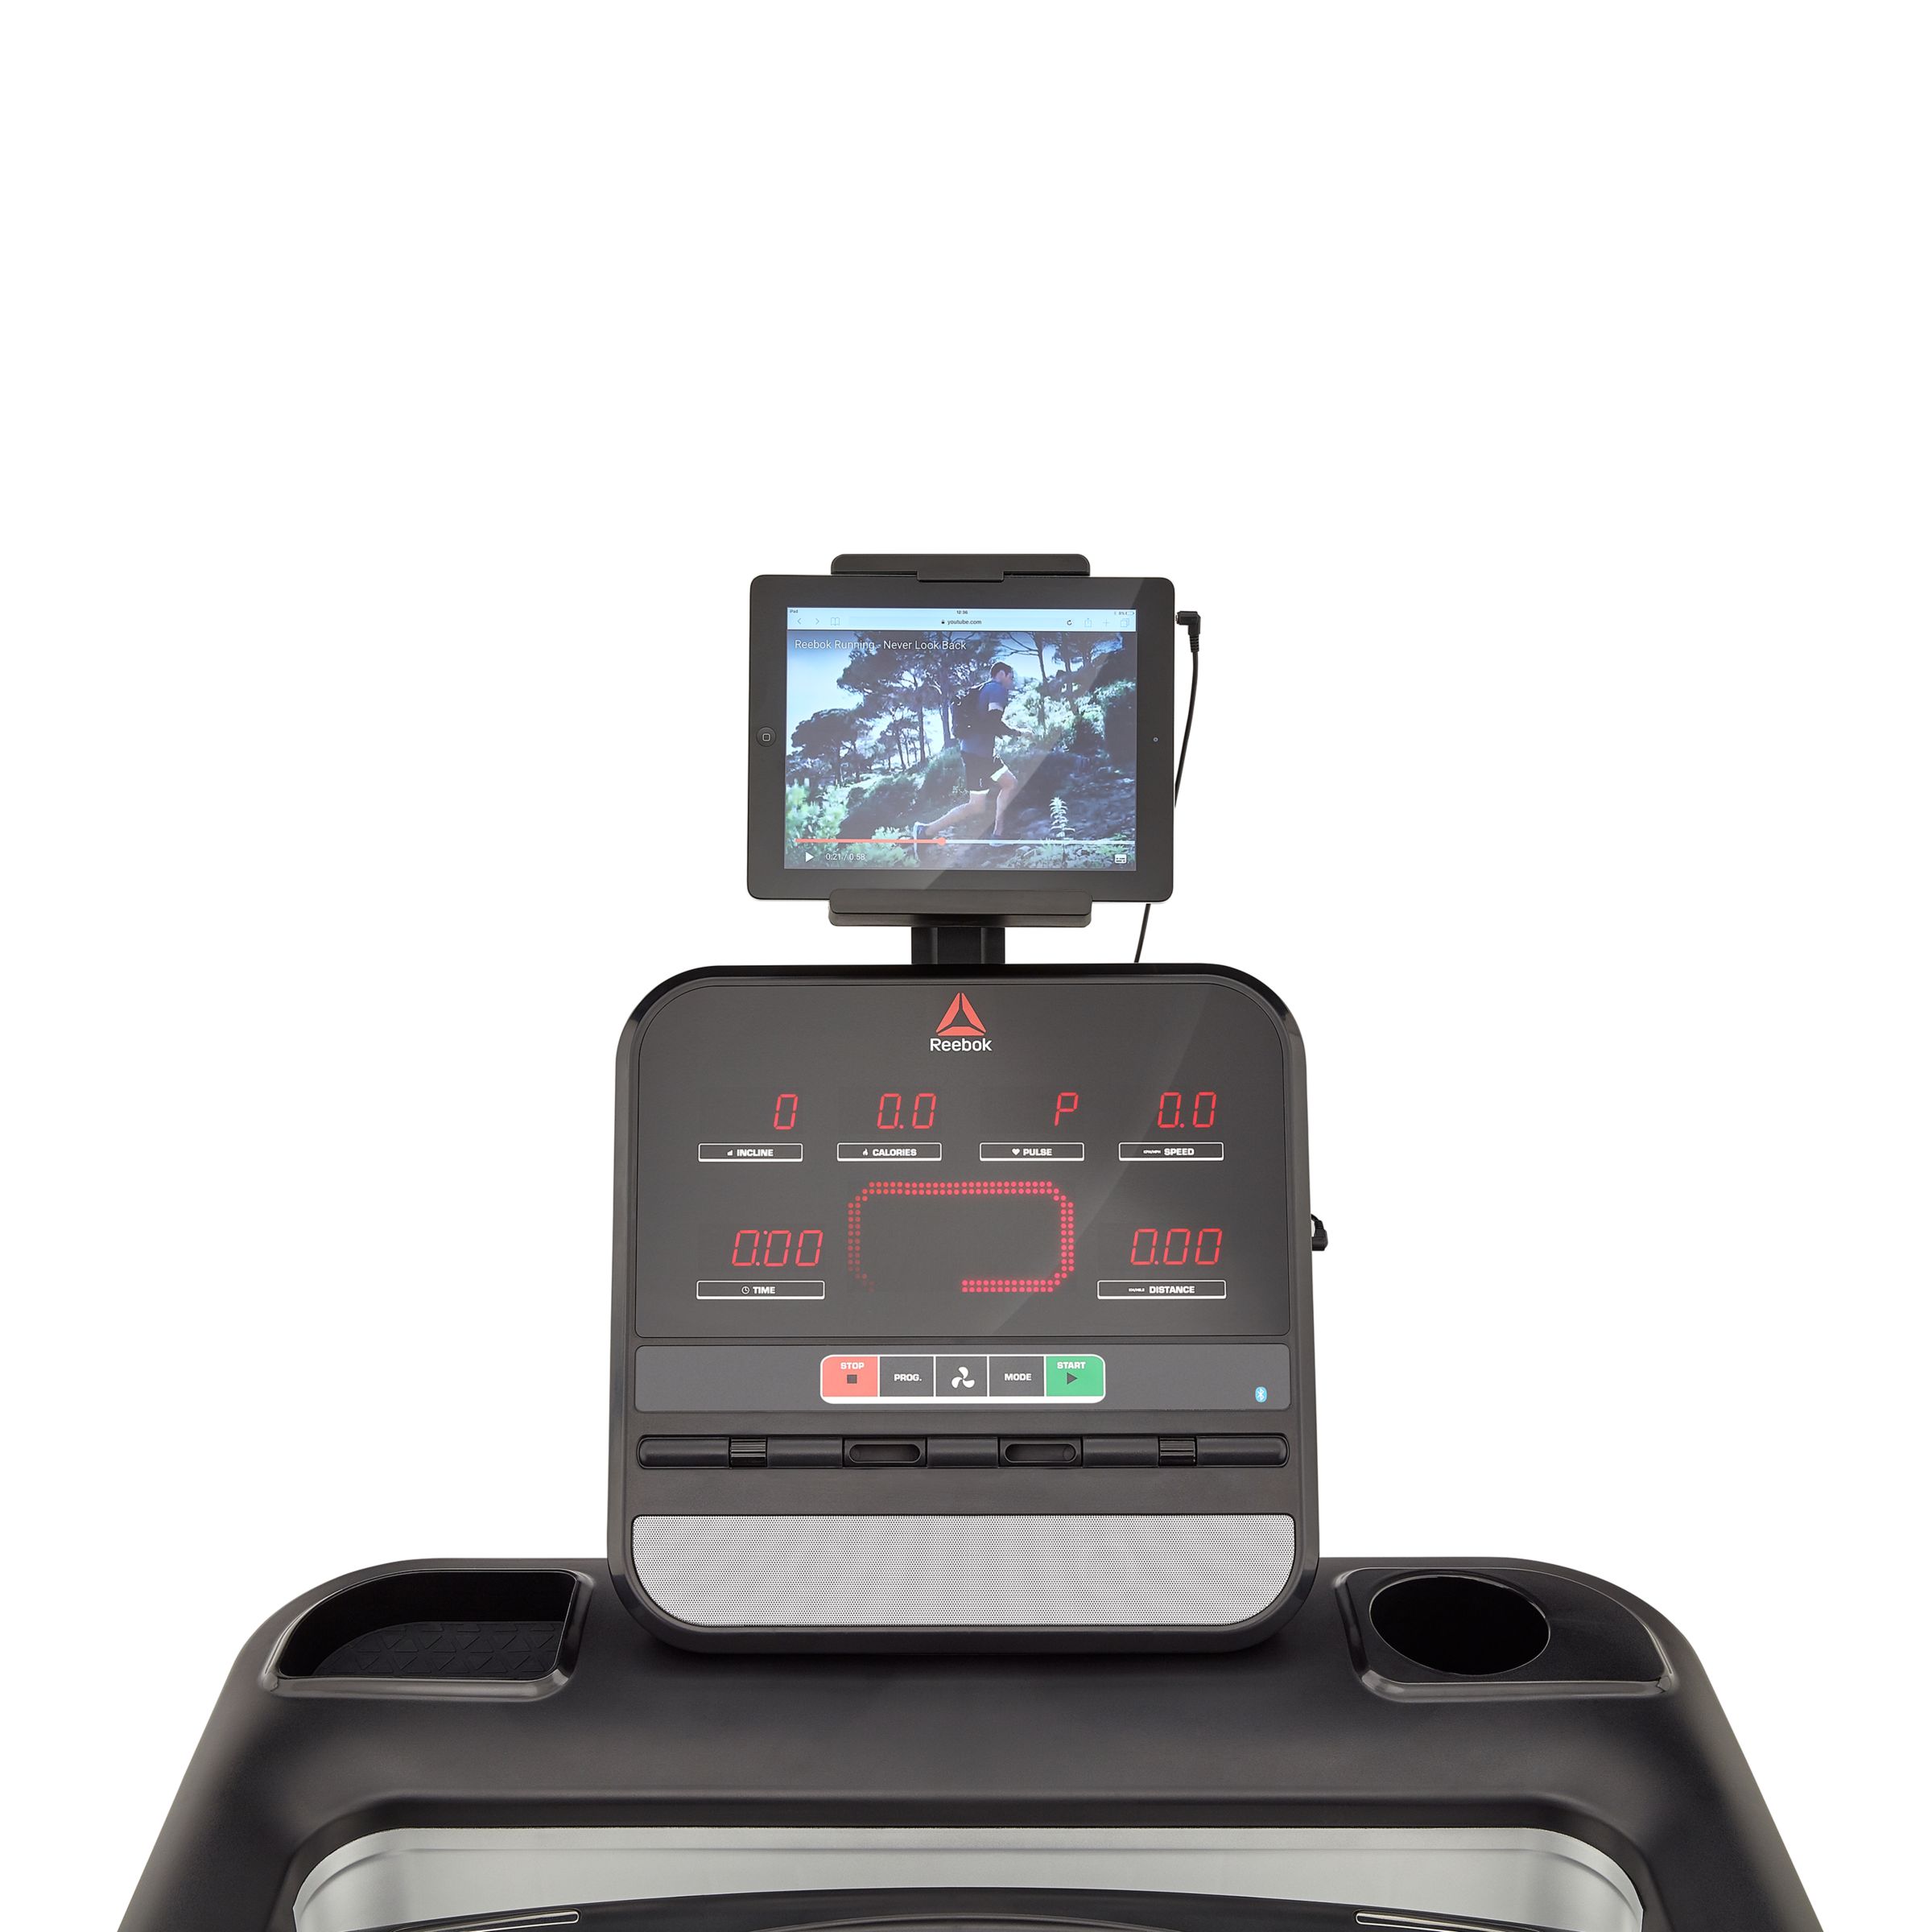 reebok sl 8.0 dc treadmill